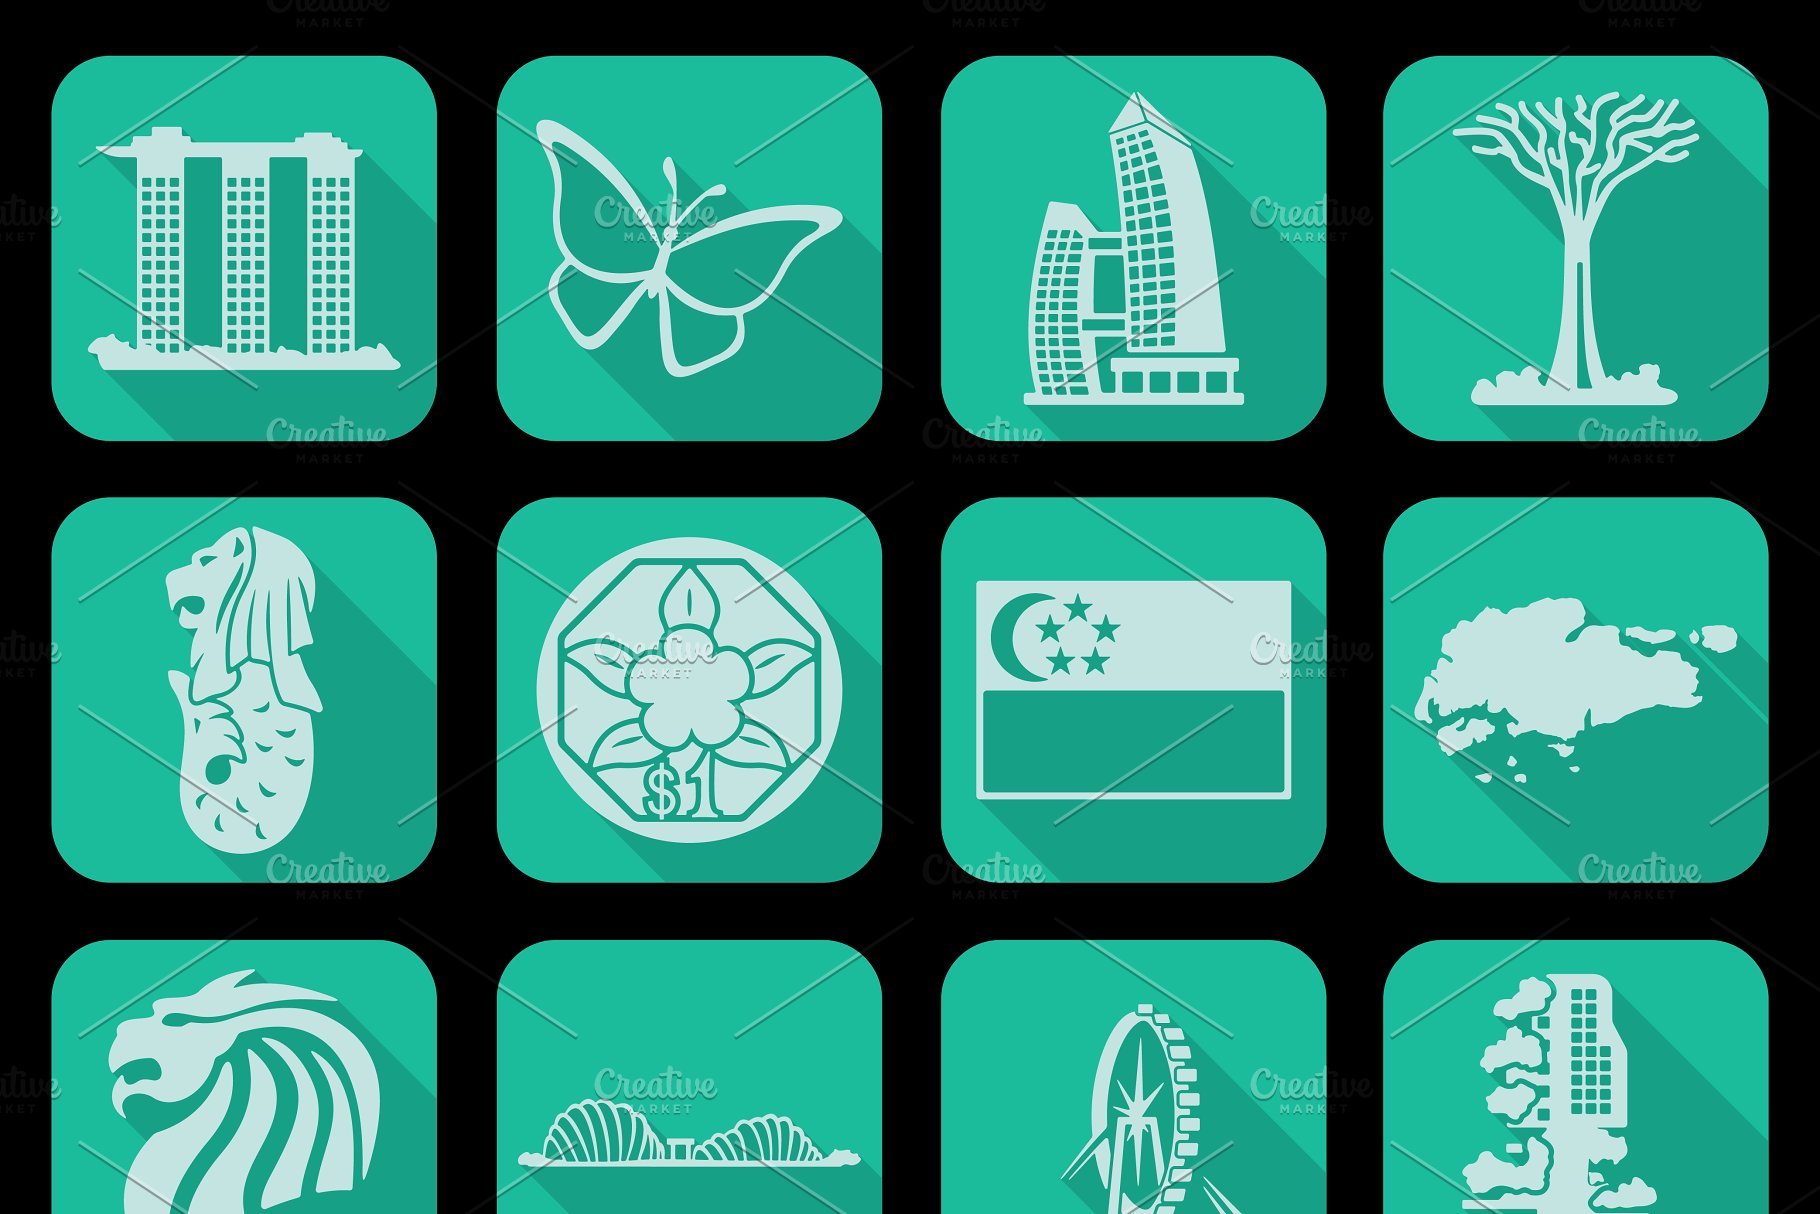 新加坡主题图标 Set of Singapore icons